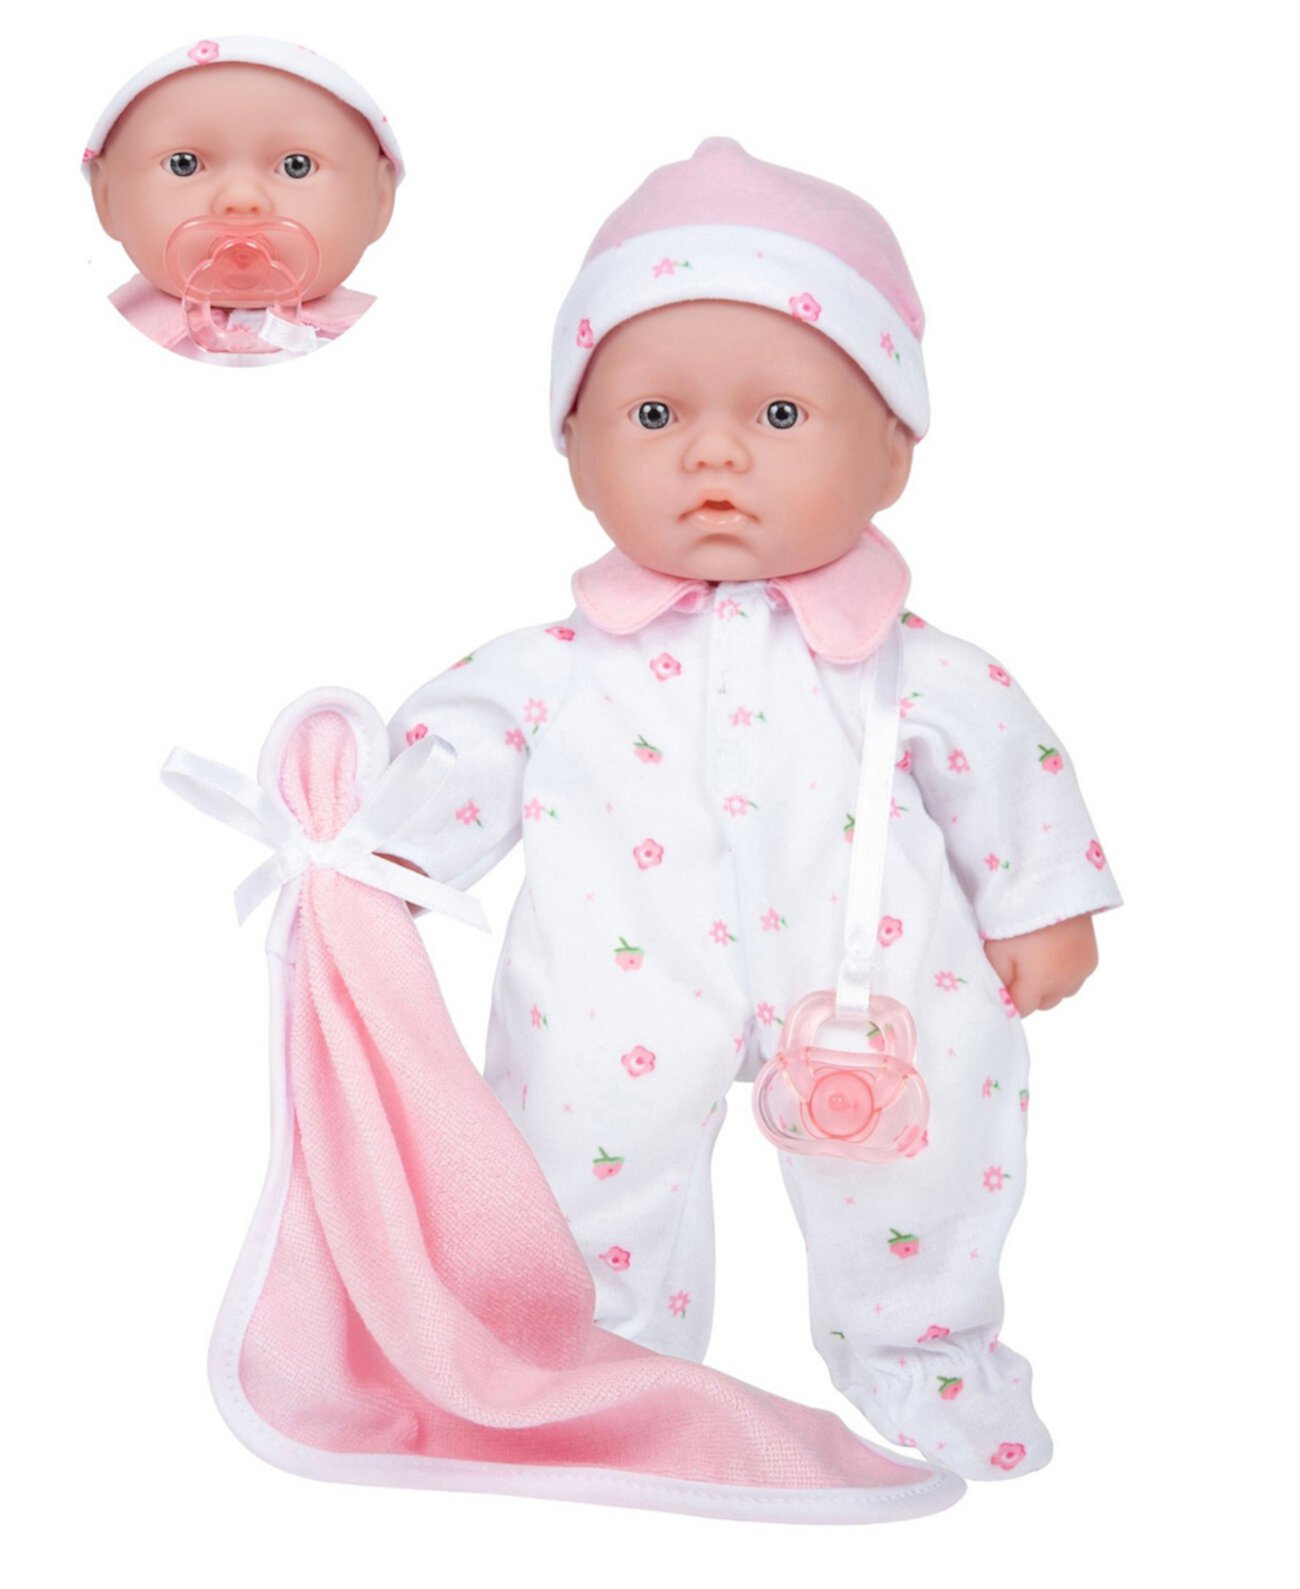 Моющаяся игровая кукла с мягким телом La Baby 11 дюймов для детей от 12 месяцев и старше, дизайн Беренгер JC Toys